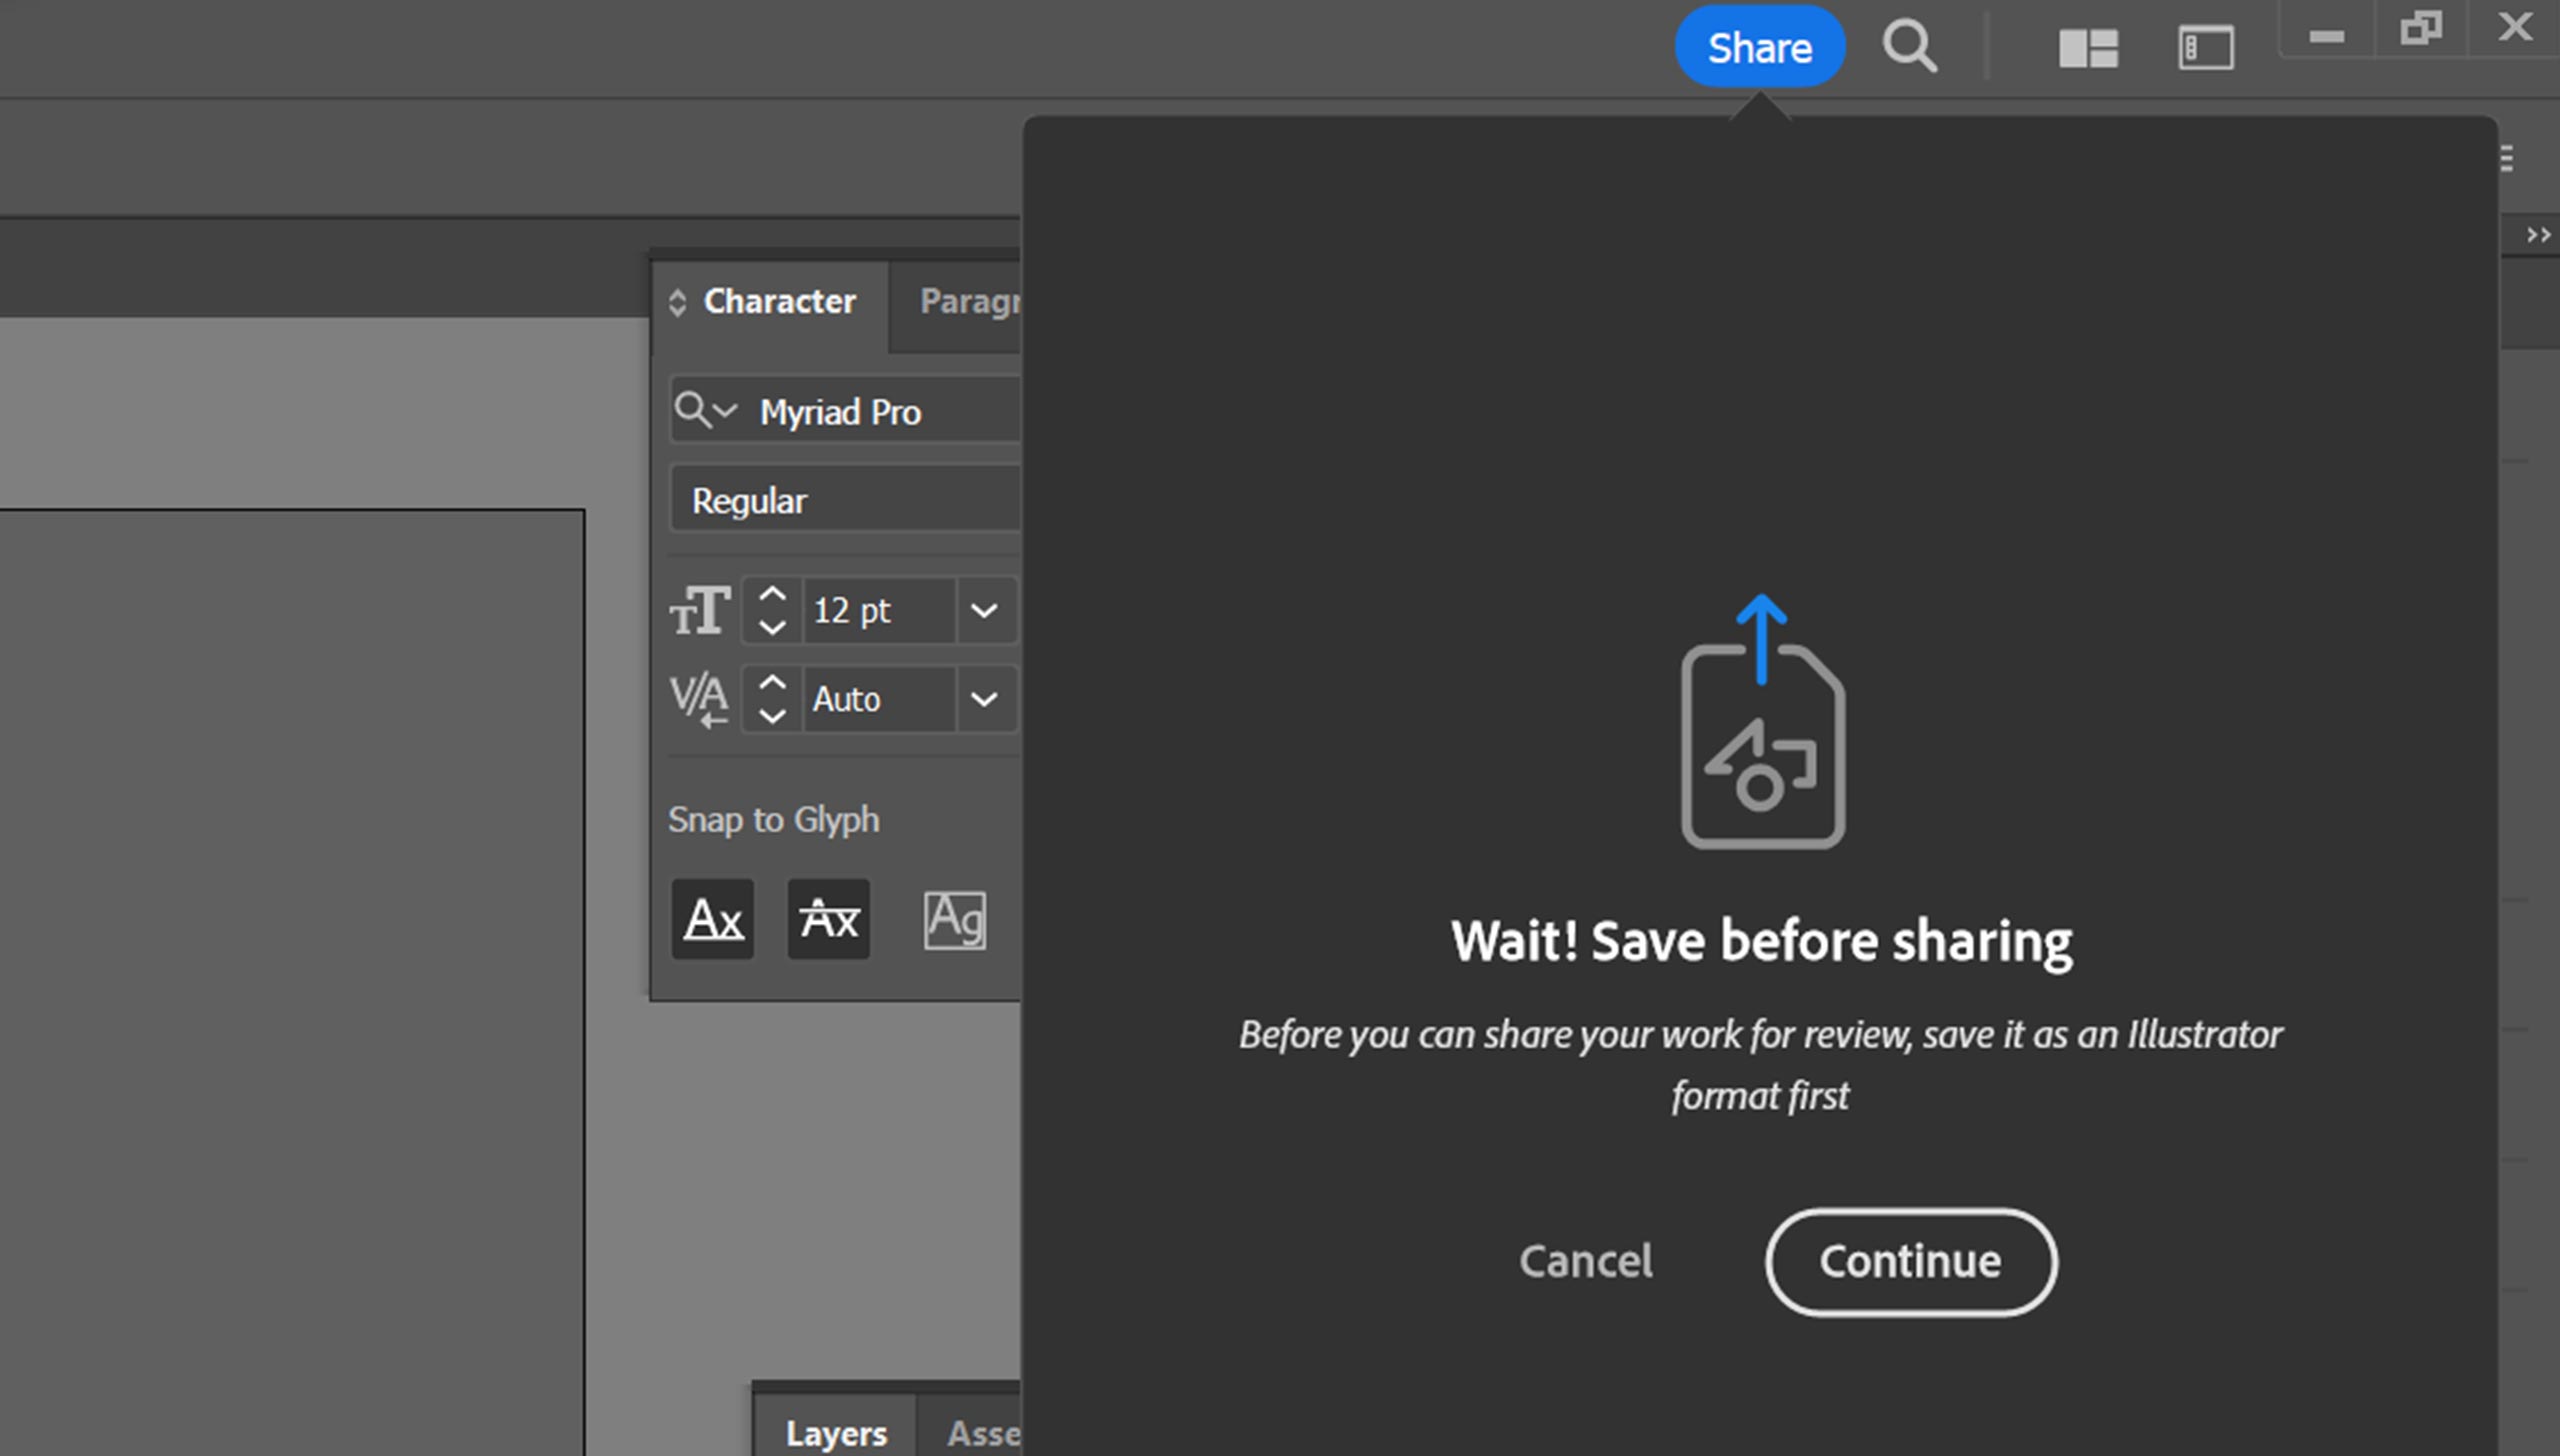 Cara Mudah Membuat Shareable review link di Adobe Illustrator 